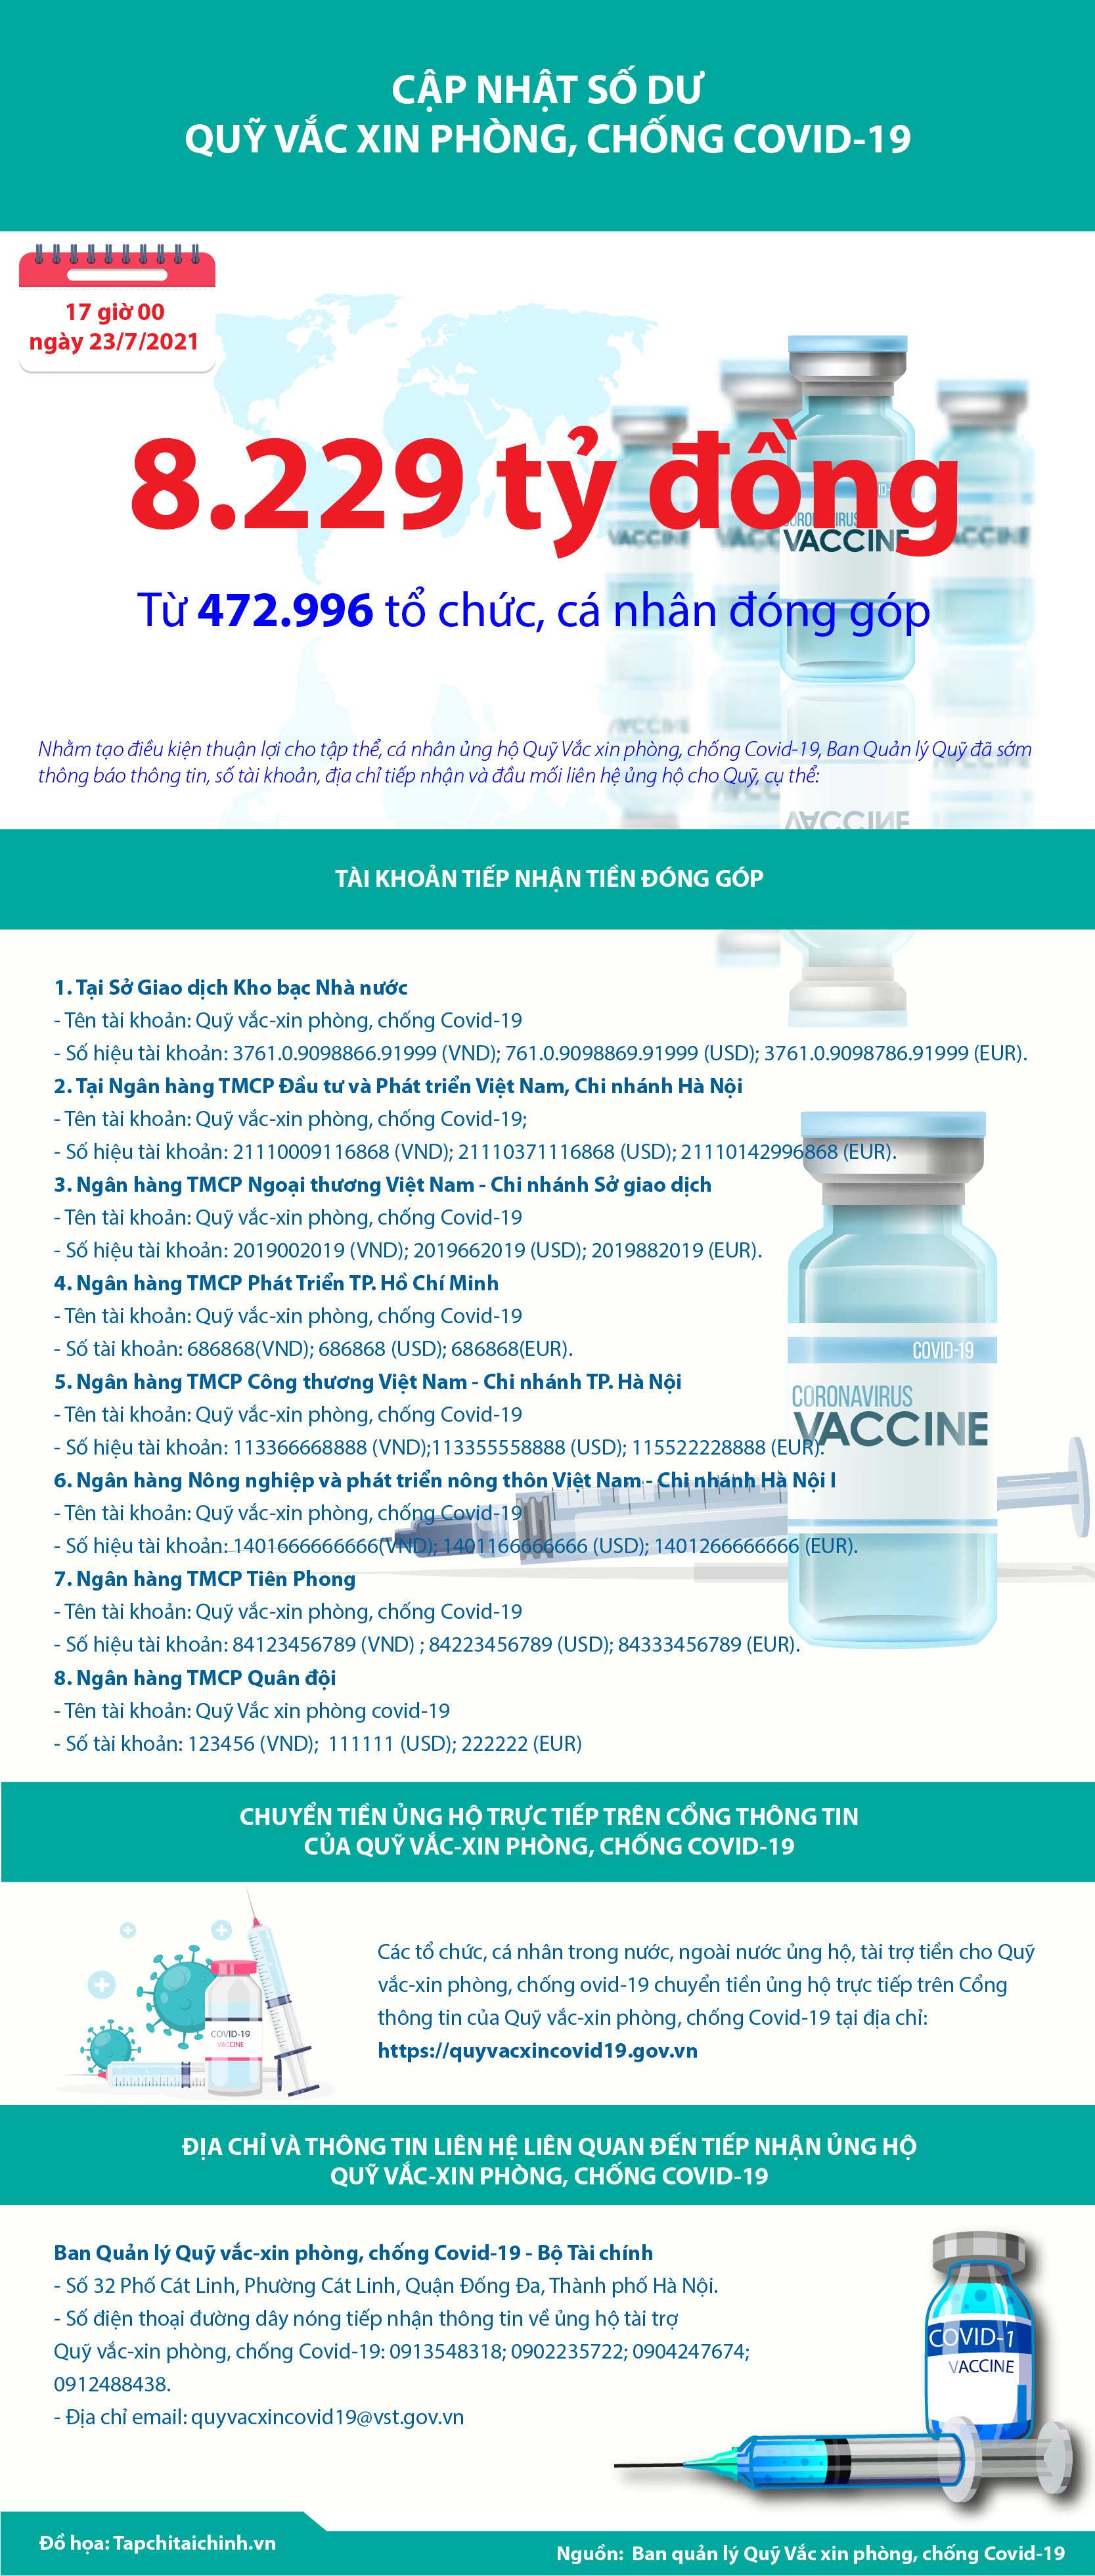 [Infographics] Quỹ Vắc xin phòng, chống Covid-19 đã tiếp nhận ủng hộ 8.229 tỷ đồng - Ảnh 1